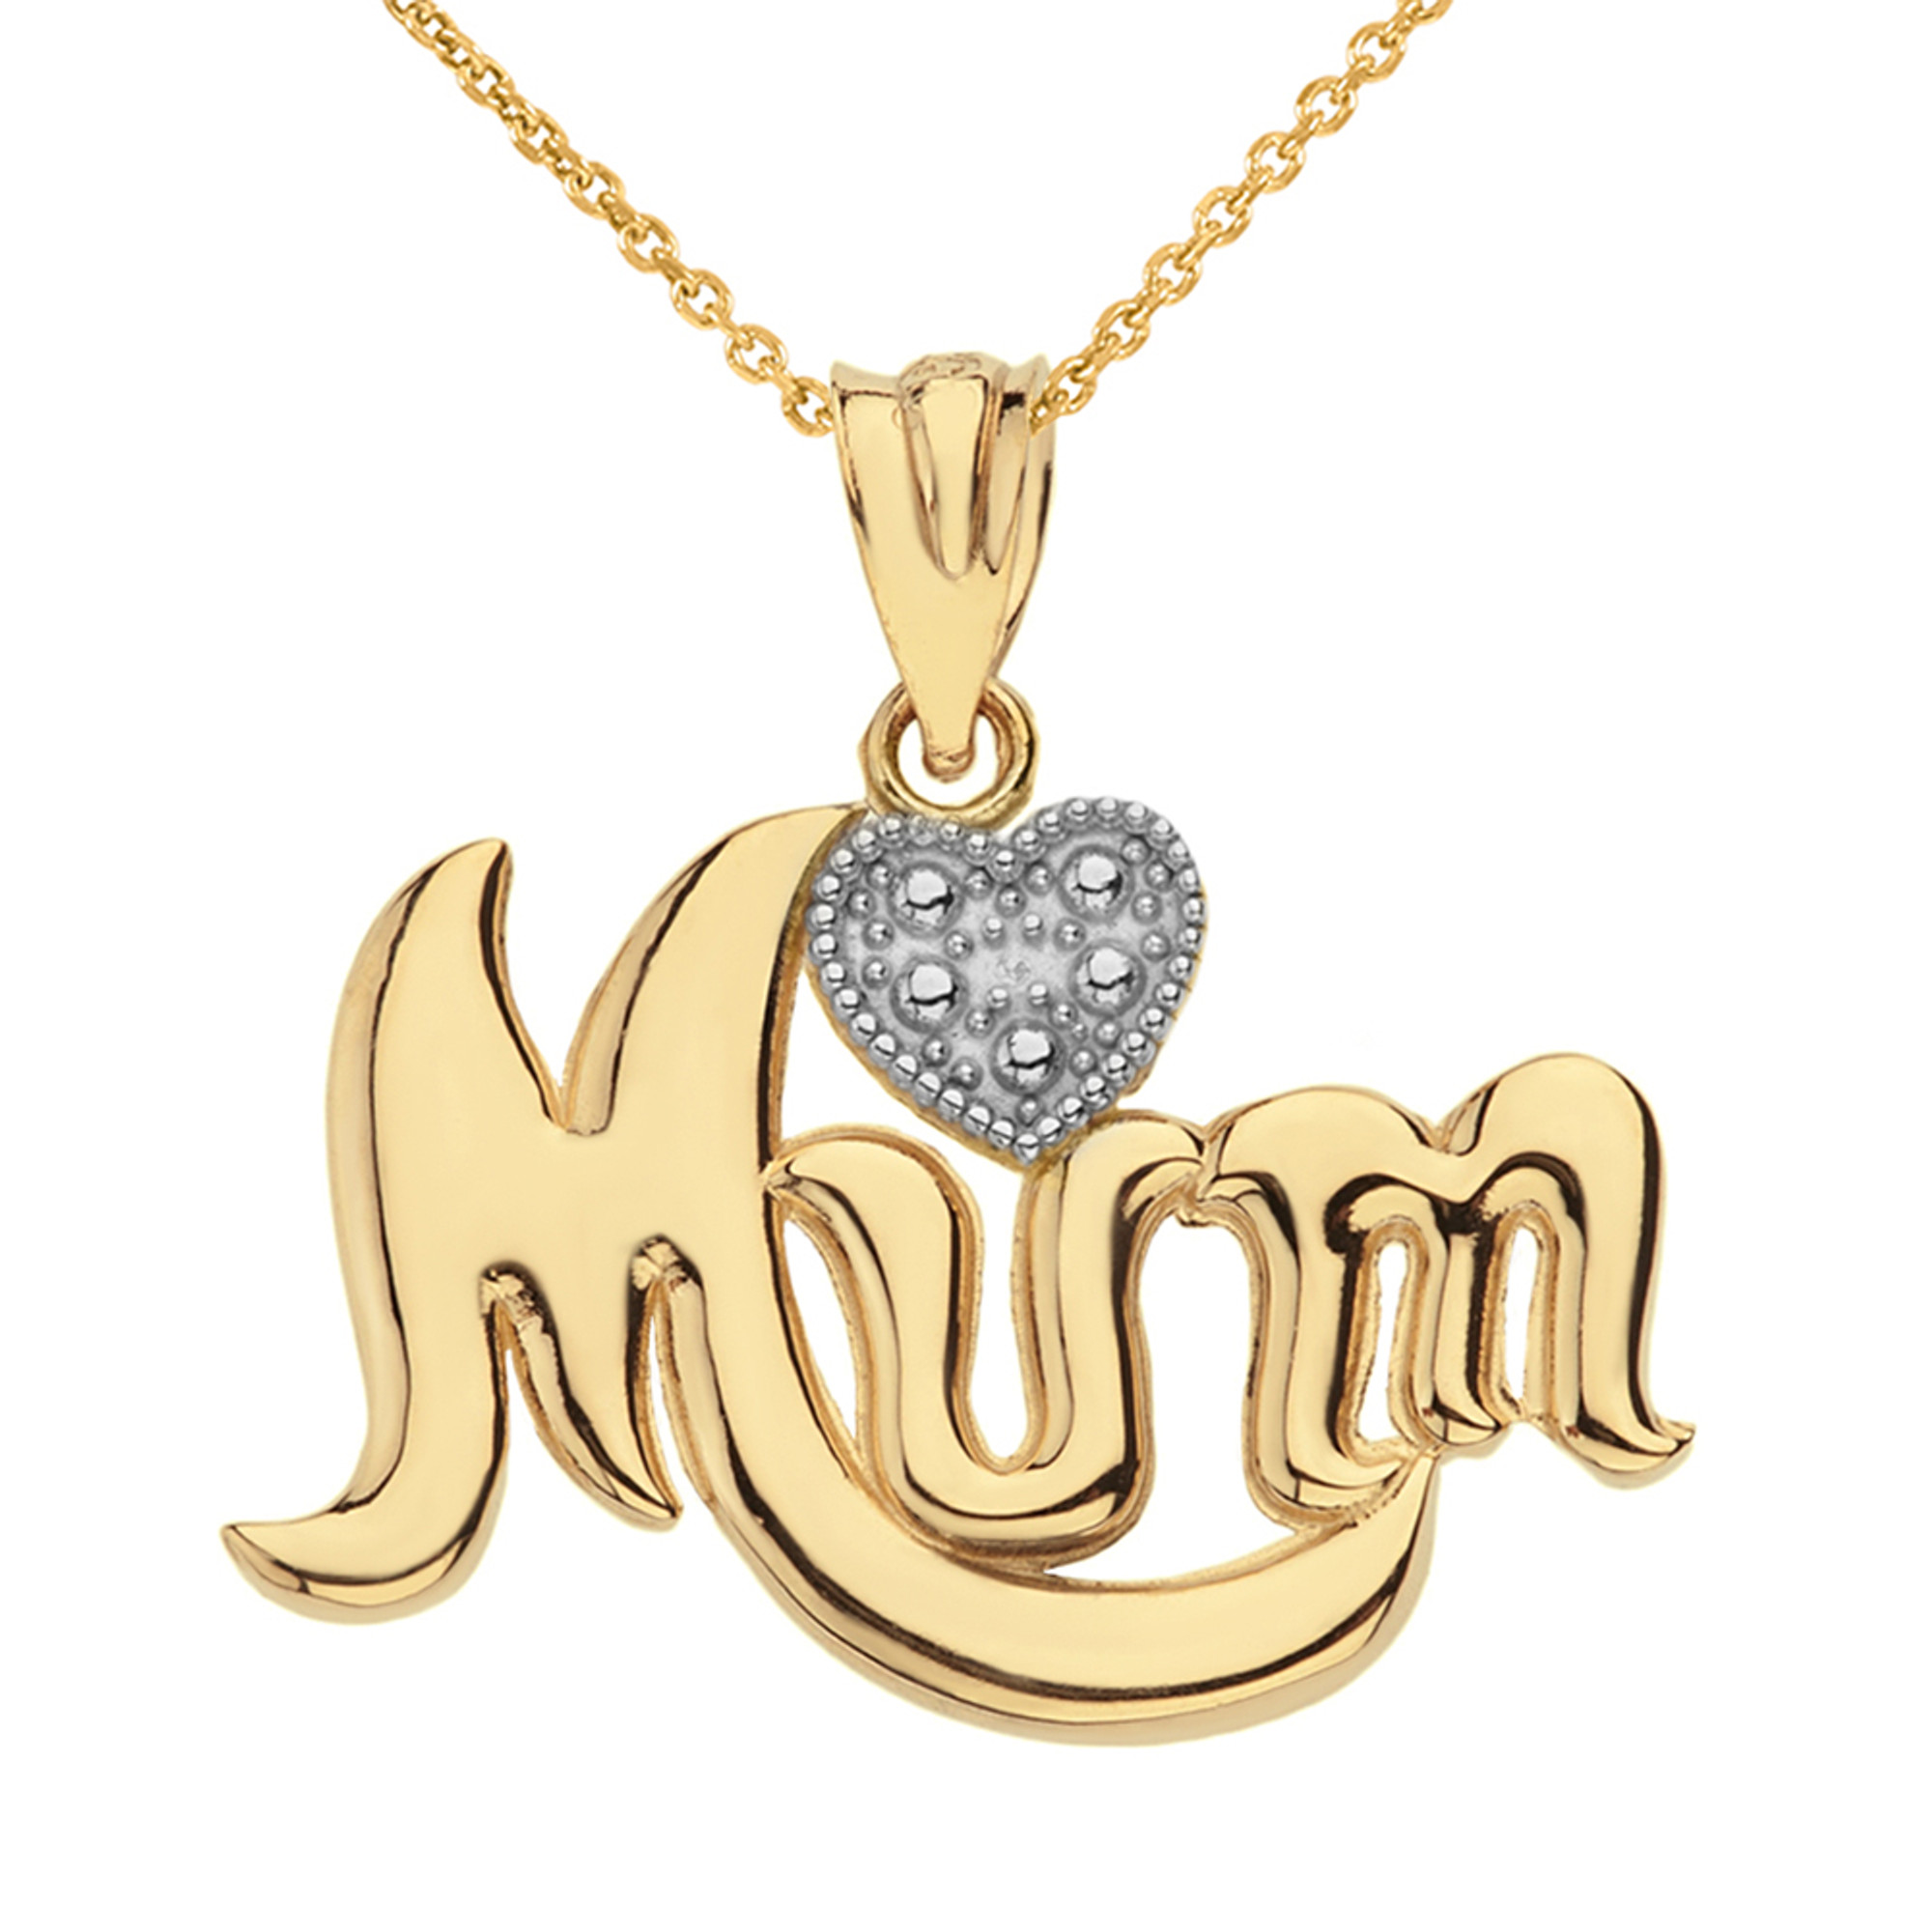 Mum Necklaces | Mum Pendant Necklaces | Save upto 50%